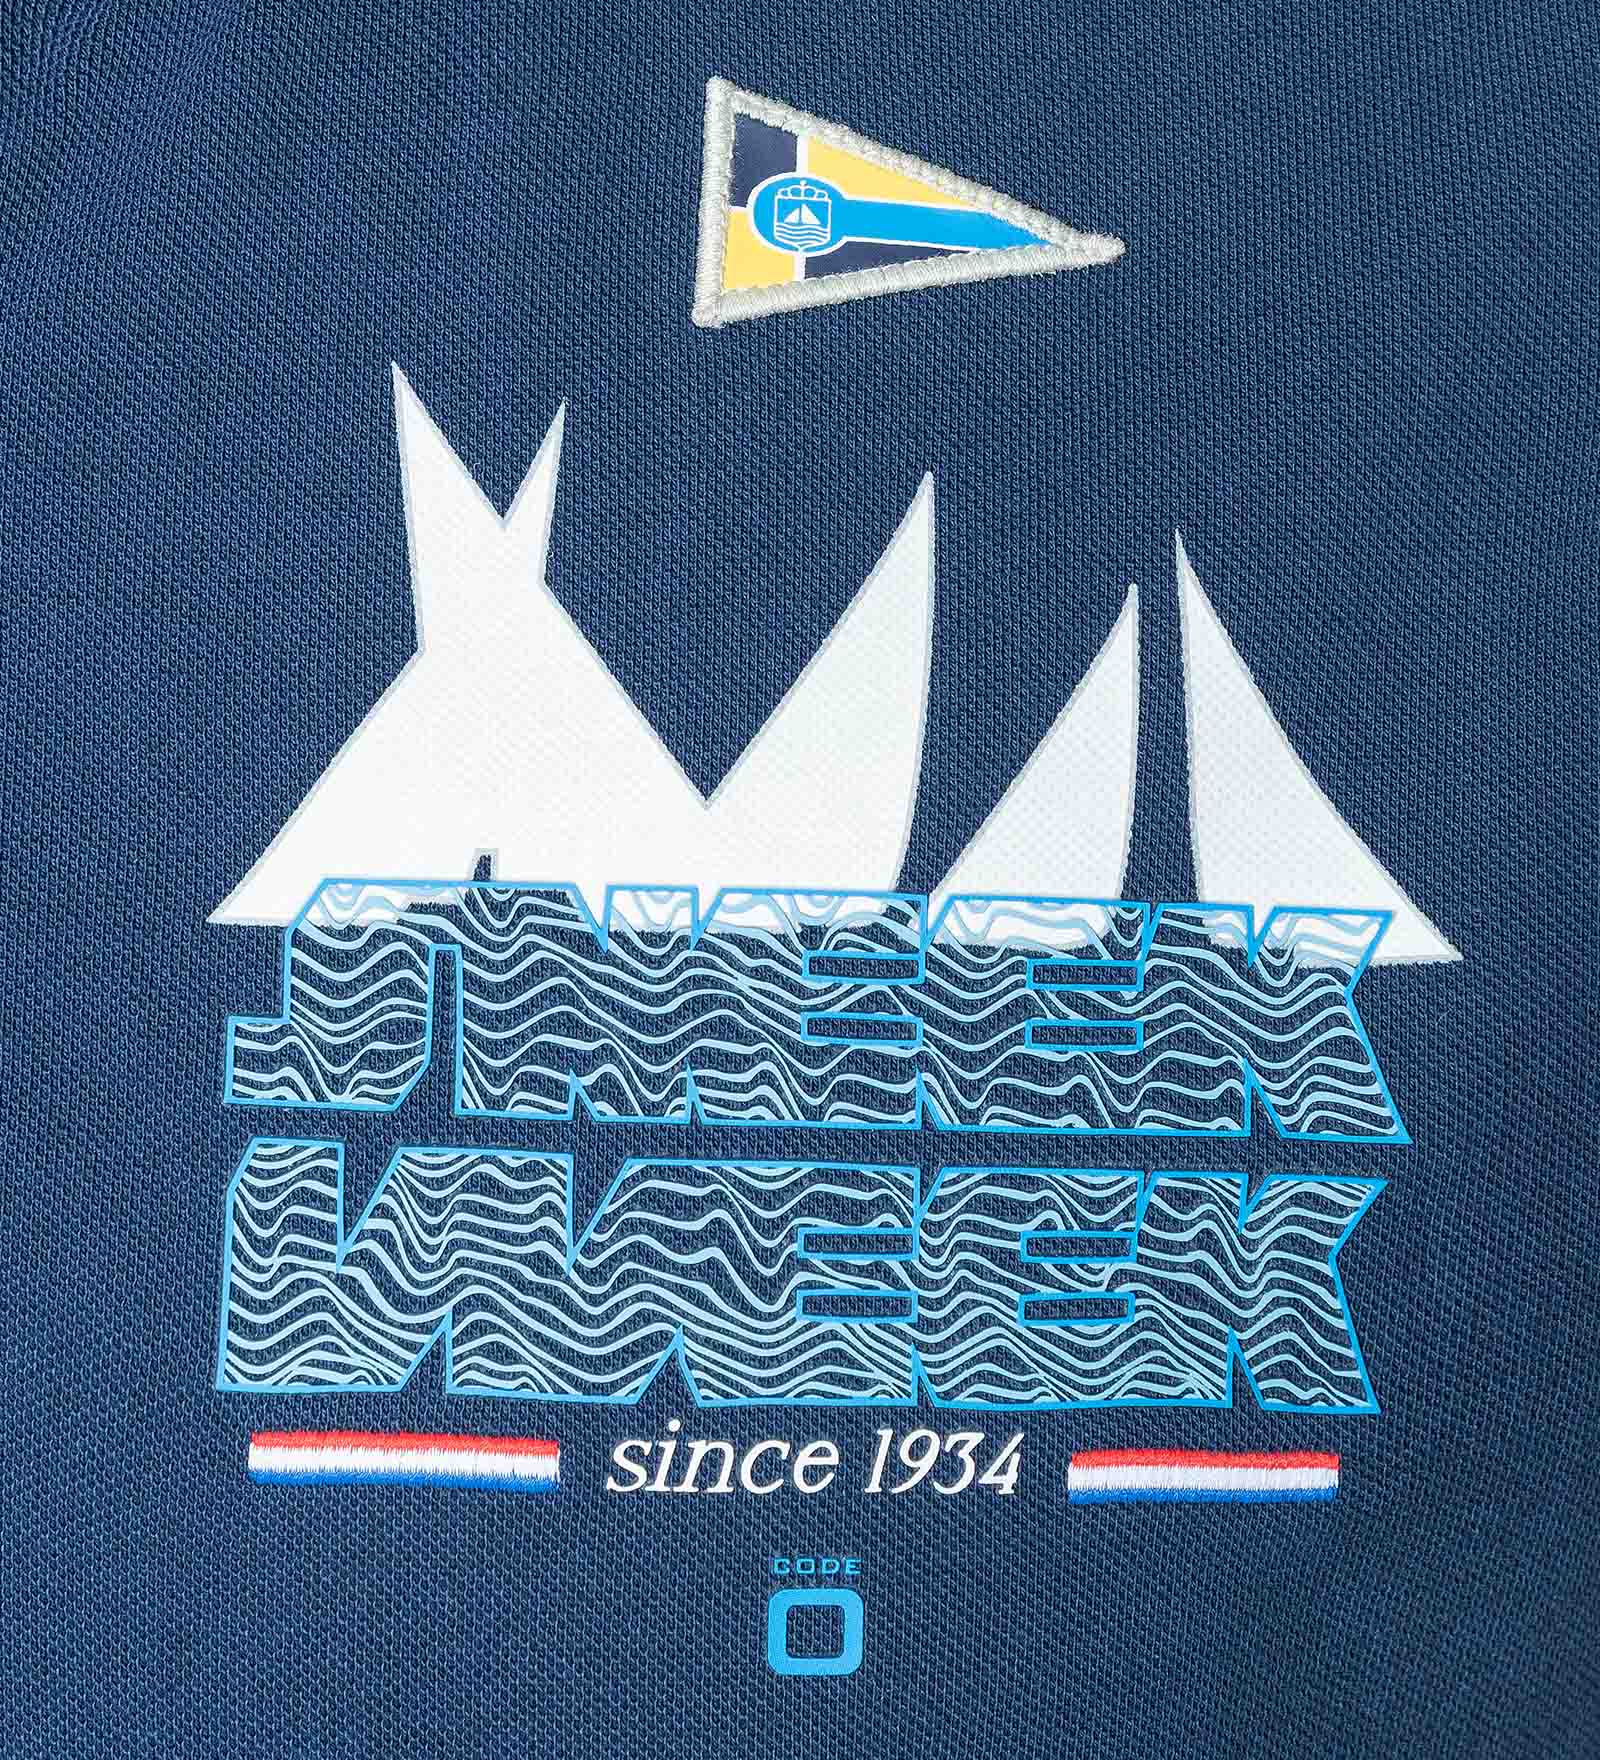 Cotton Polo Shirt Navy Blue for Men 